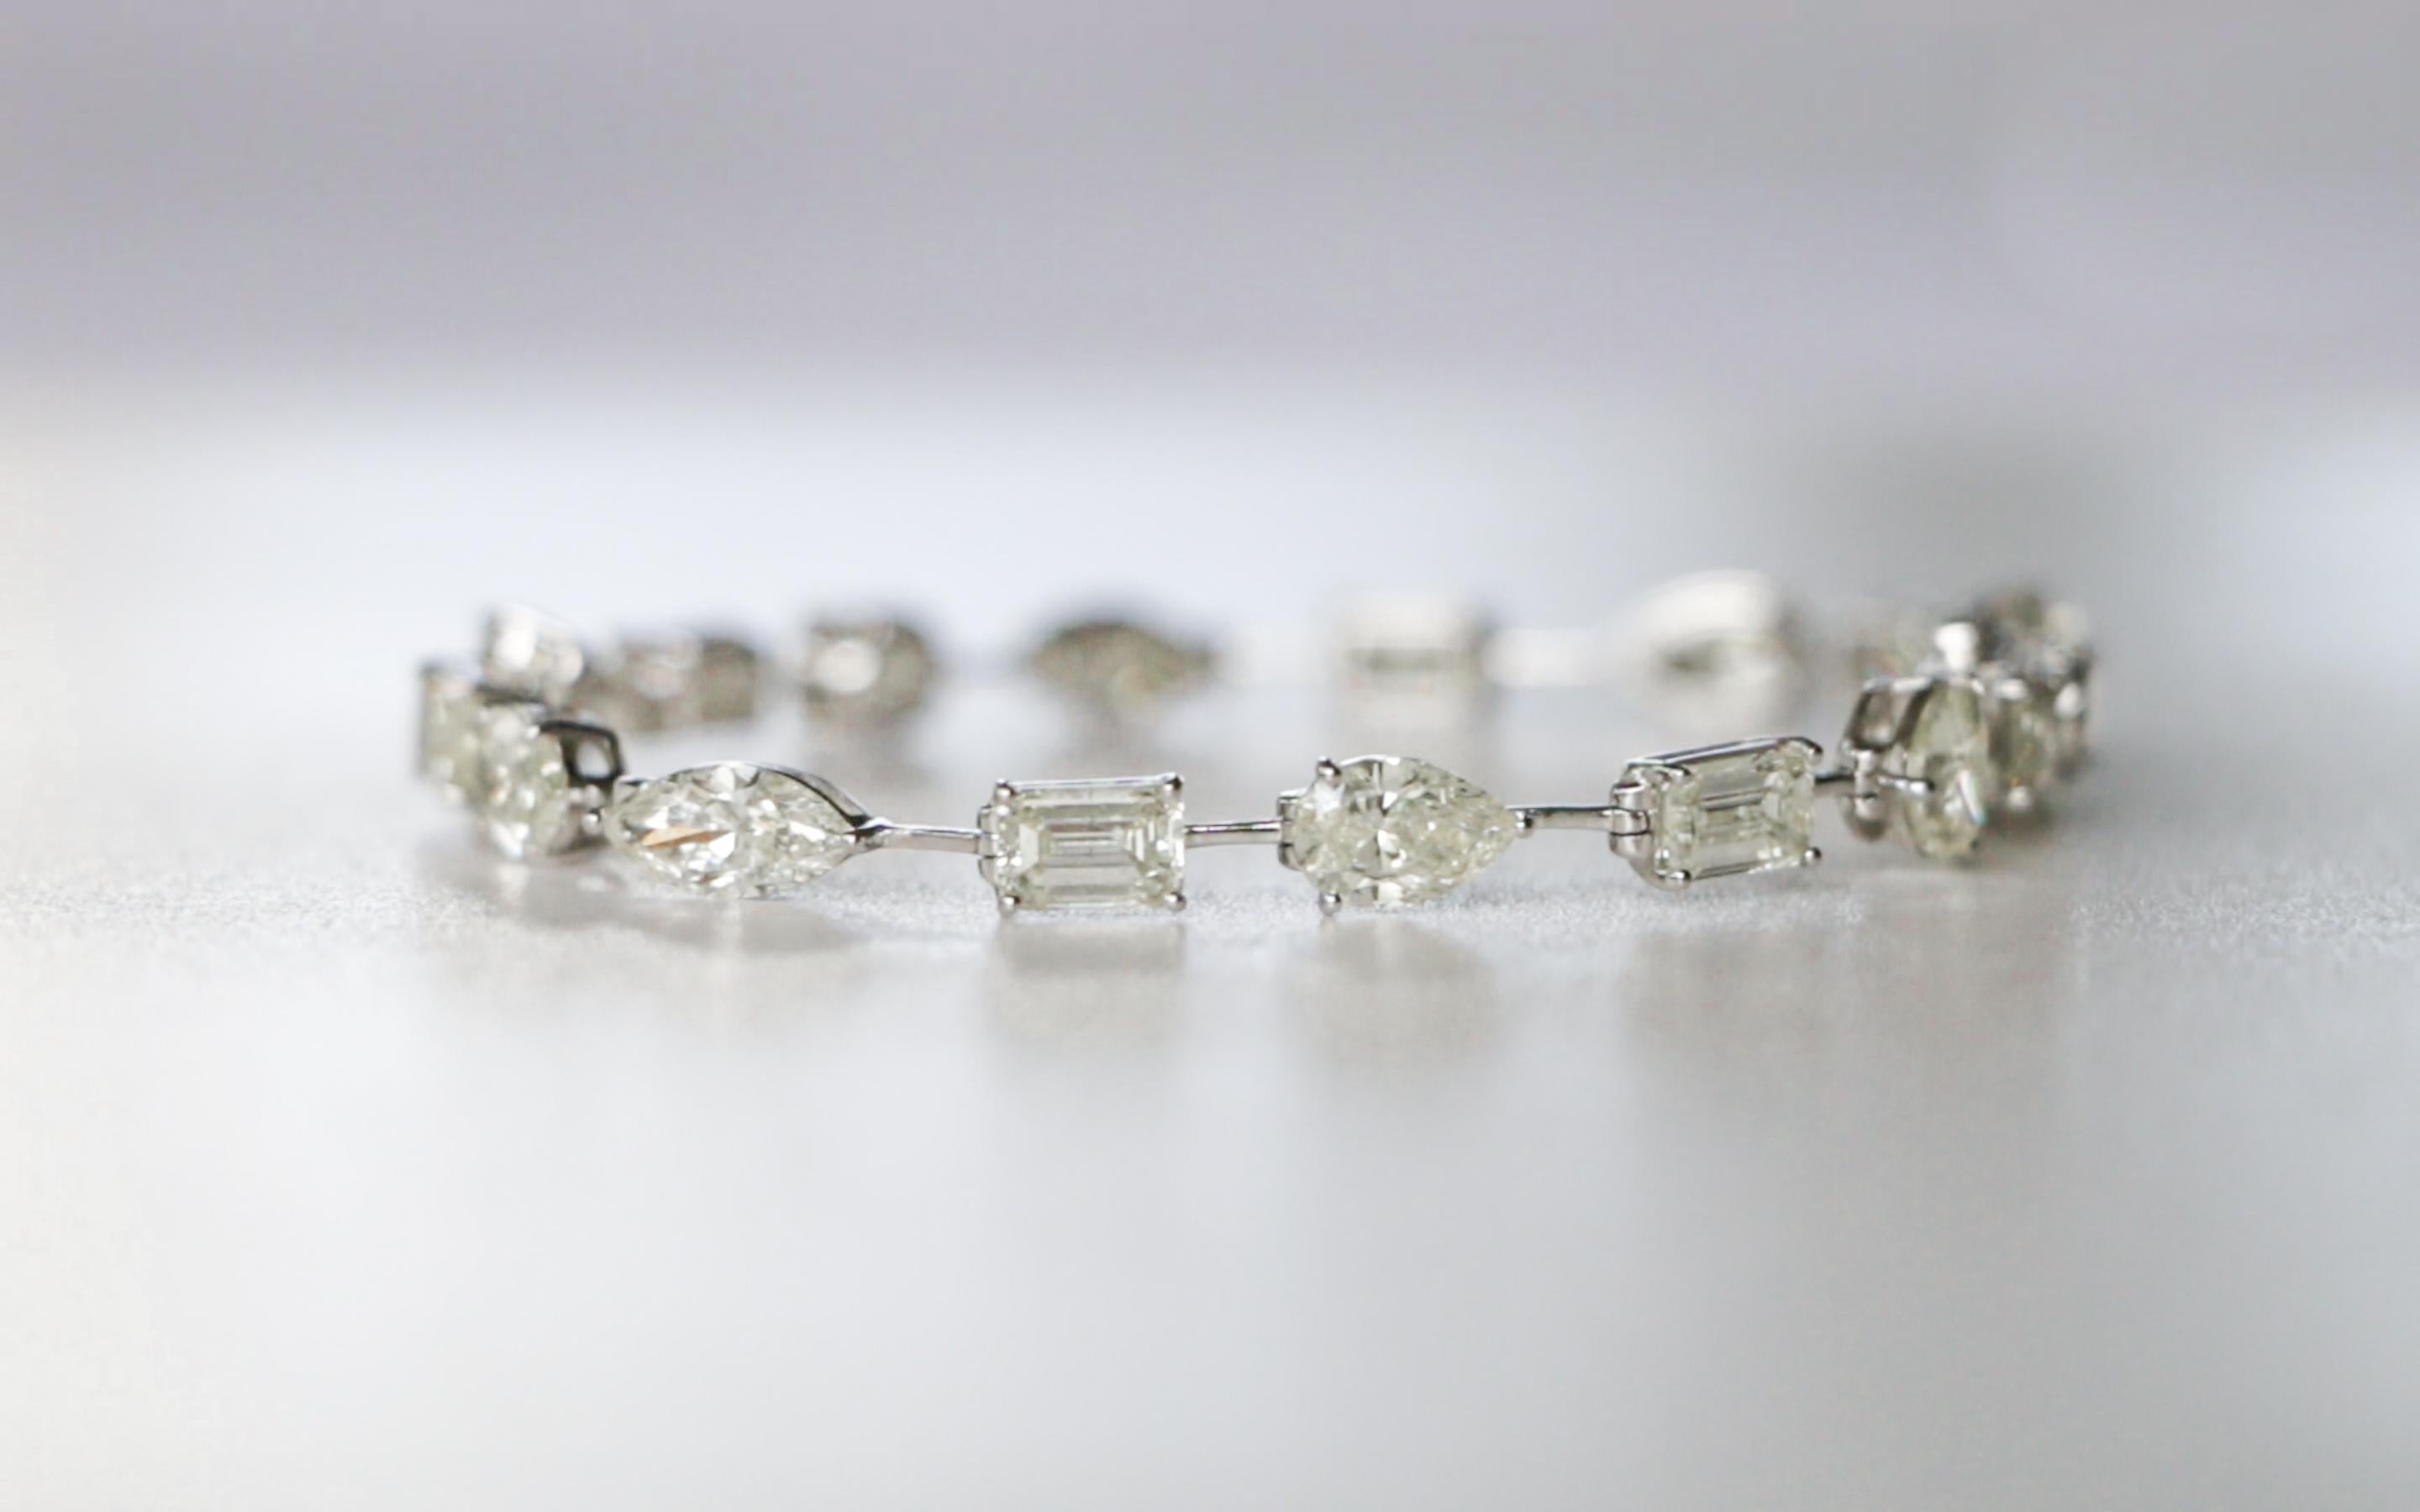 15.5 ct Fancy Cut Diamond Bracelet in 18K White Gold For Sale 1